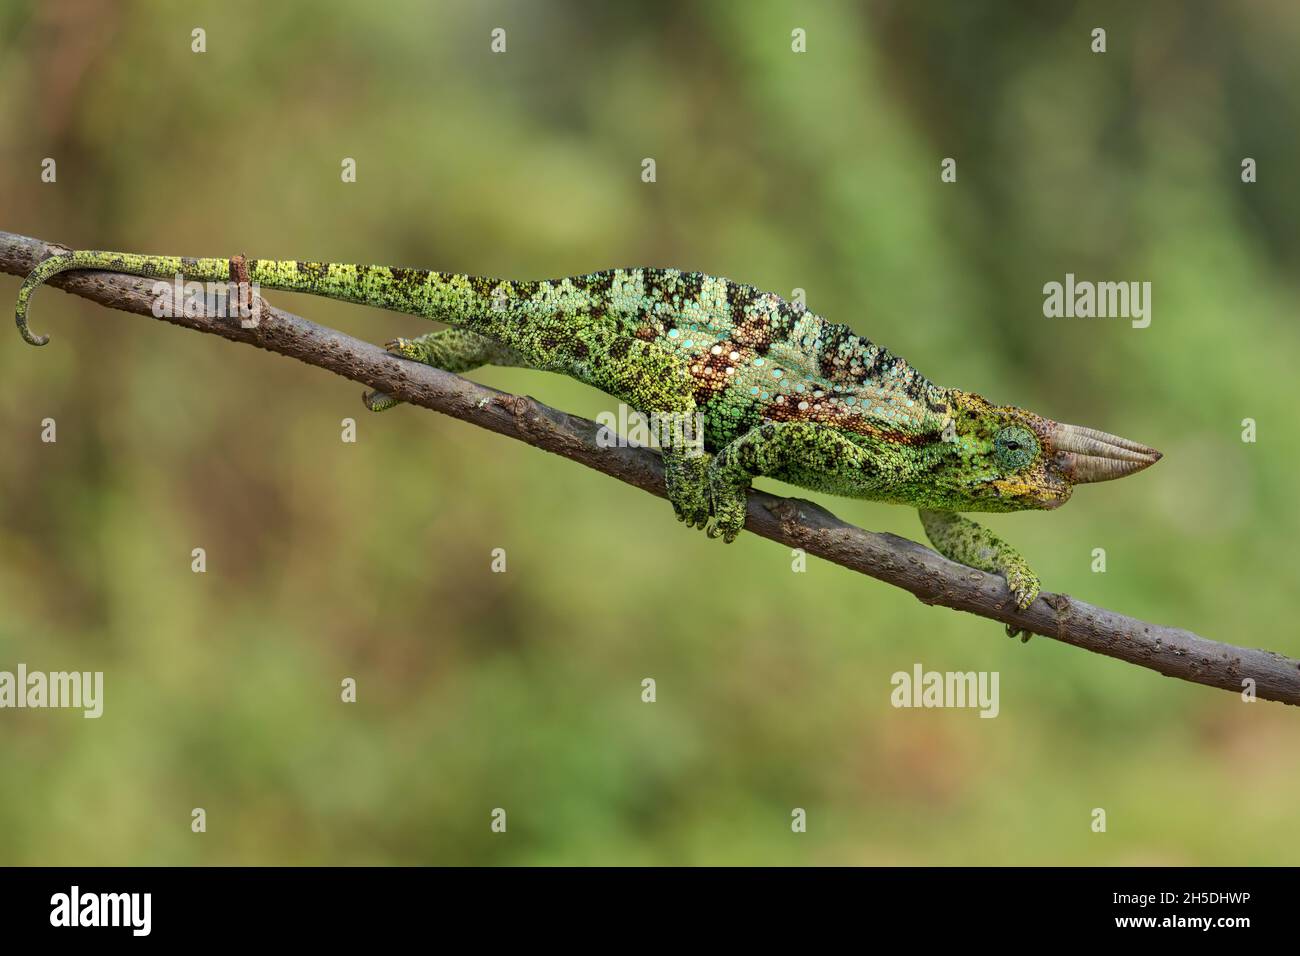 Johnston's Chameleon -Trioceros johnstoni, bellissima lucertola colorata da boschi e cespugli africani, Bwindi, Uganda. Foto Stock